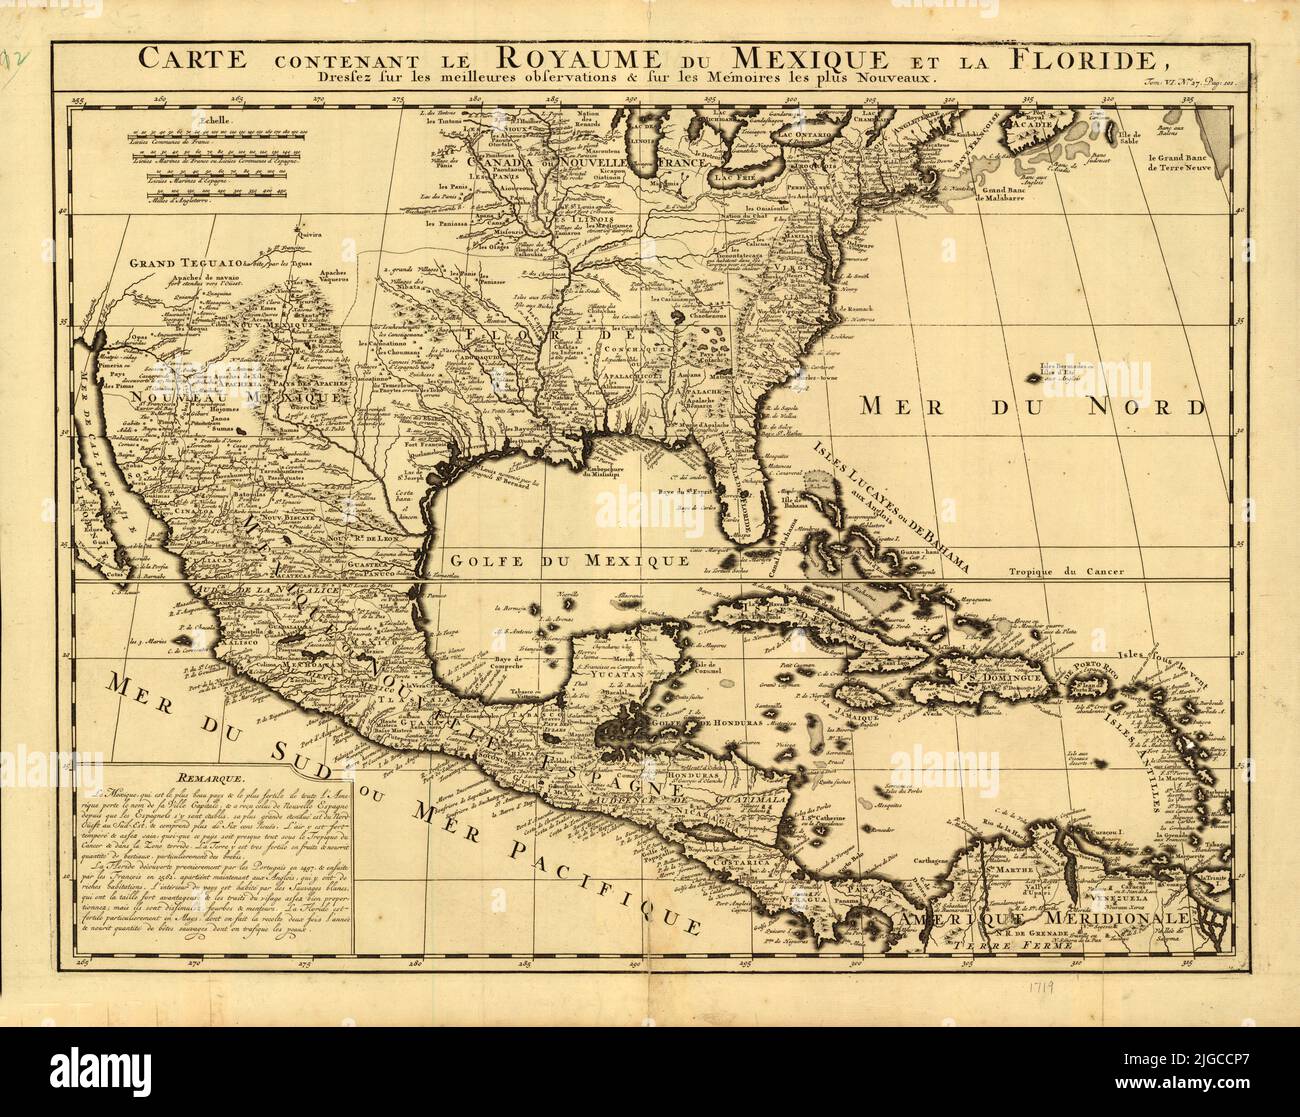 Carte française du Mexique et de la Floride, vers 1750 Banque D'Images